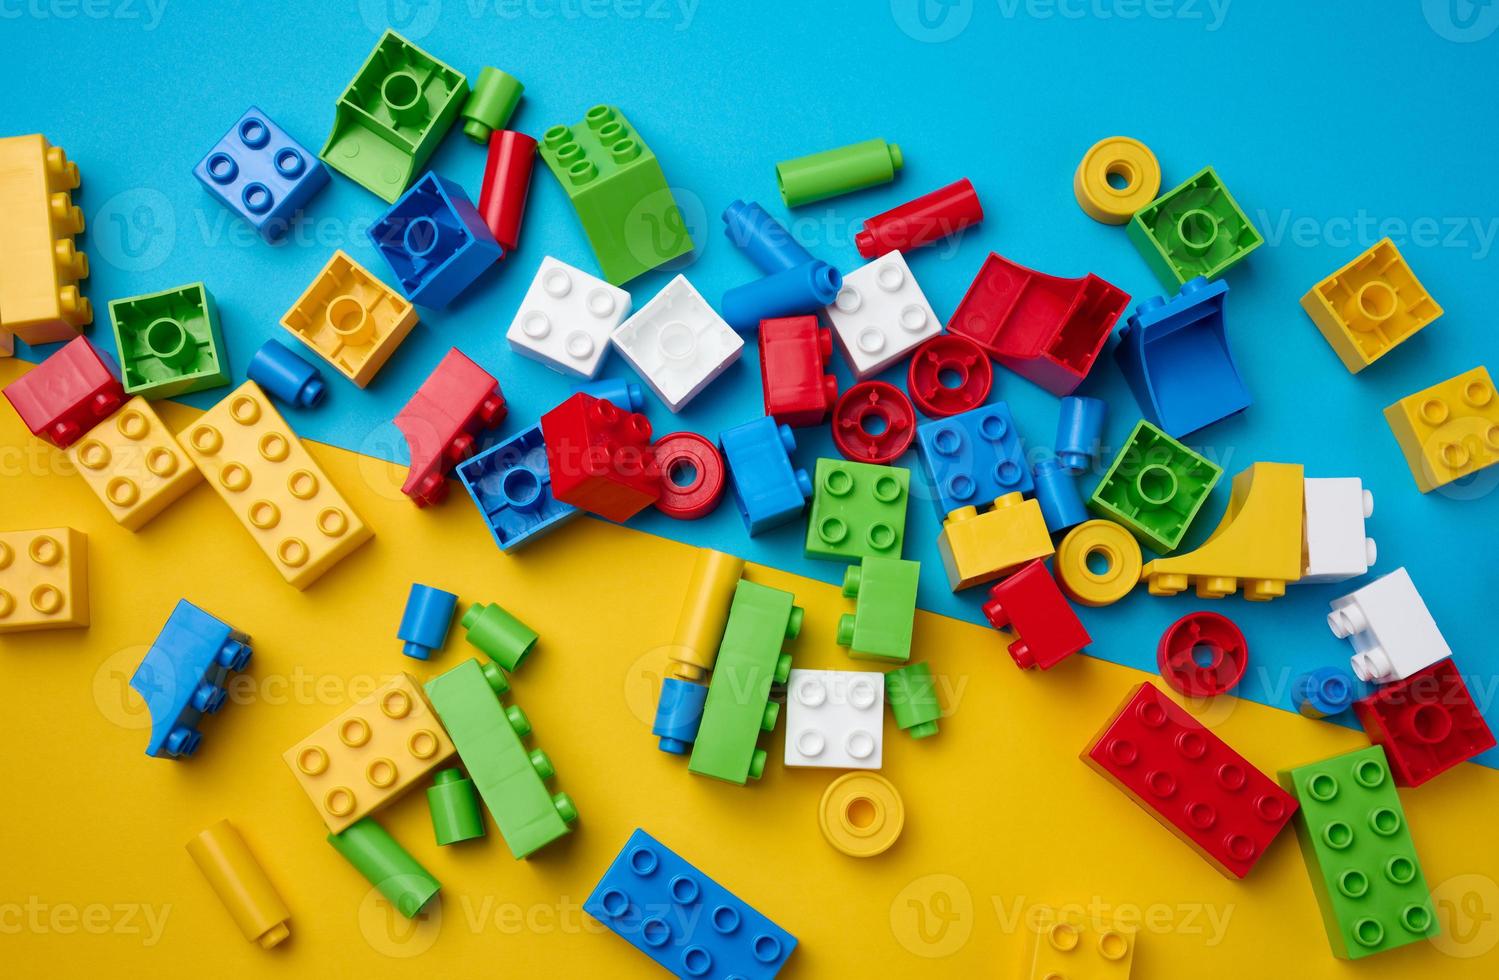 partes espalhadas de um designer infantil de plástico, vista superior. fundo azul amarelo foto